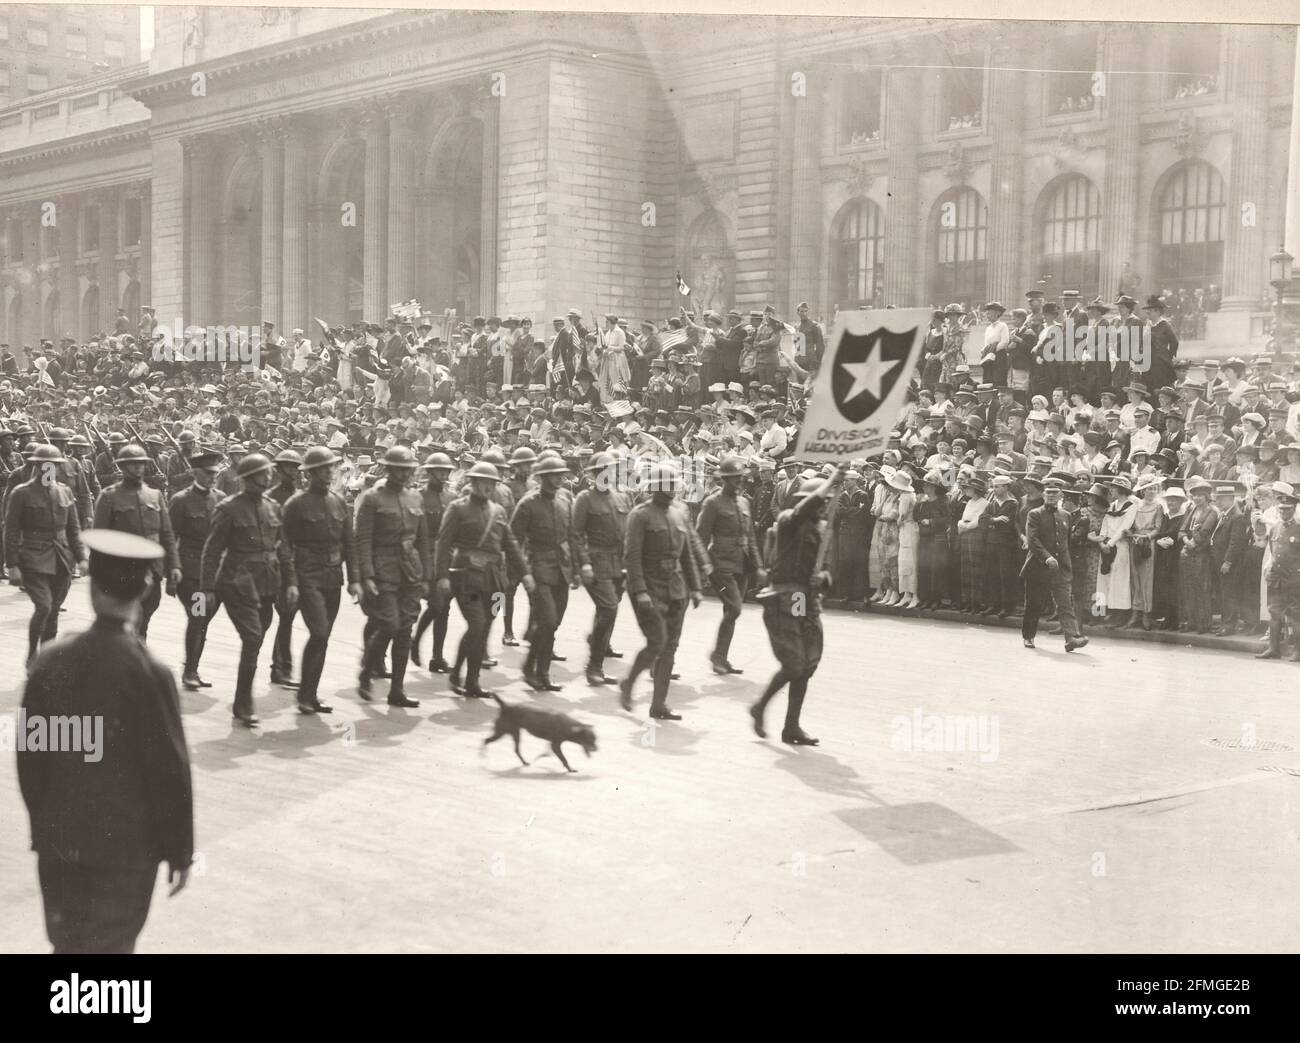 Männer der zweiten Division, die die preußischen Garde in Belleau Wood schlugen, jubelten, als sie die Fifth Avenue, New York City, New York Division Headquarters Truppe in der Parade - 1919, hochmarschierten Stockfoto